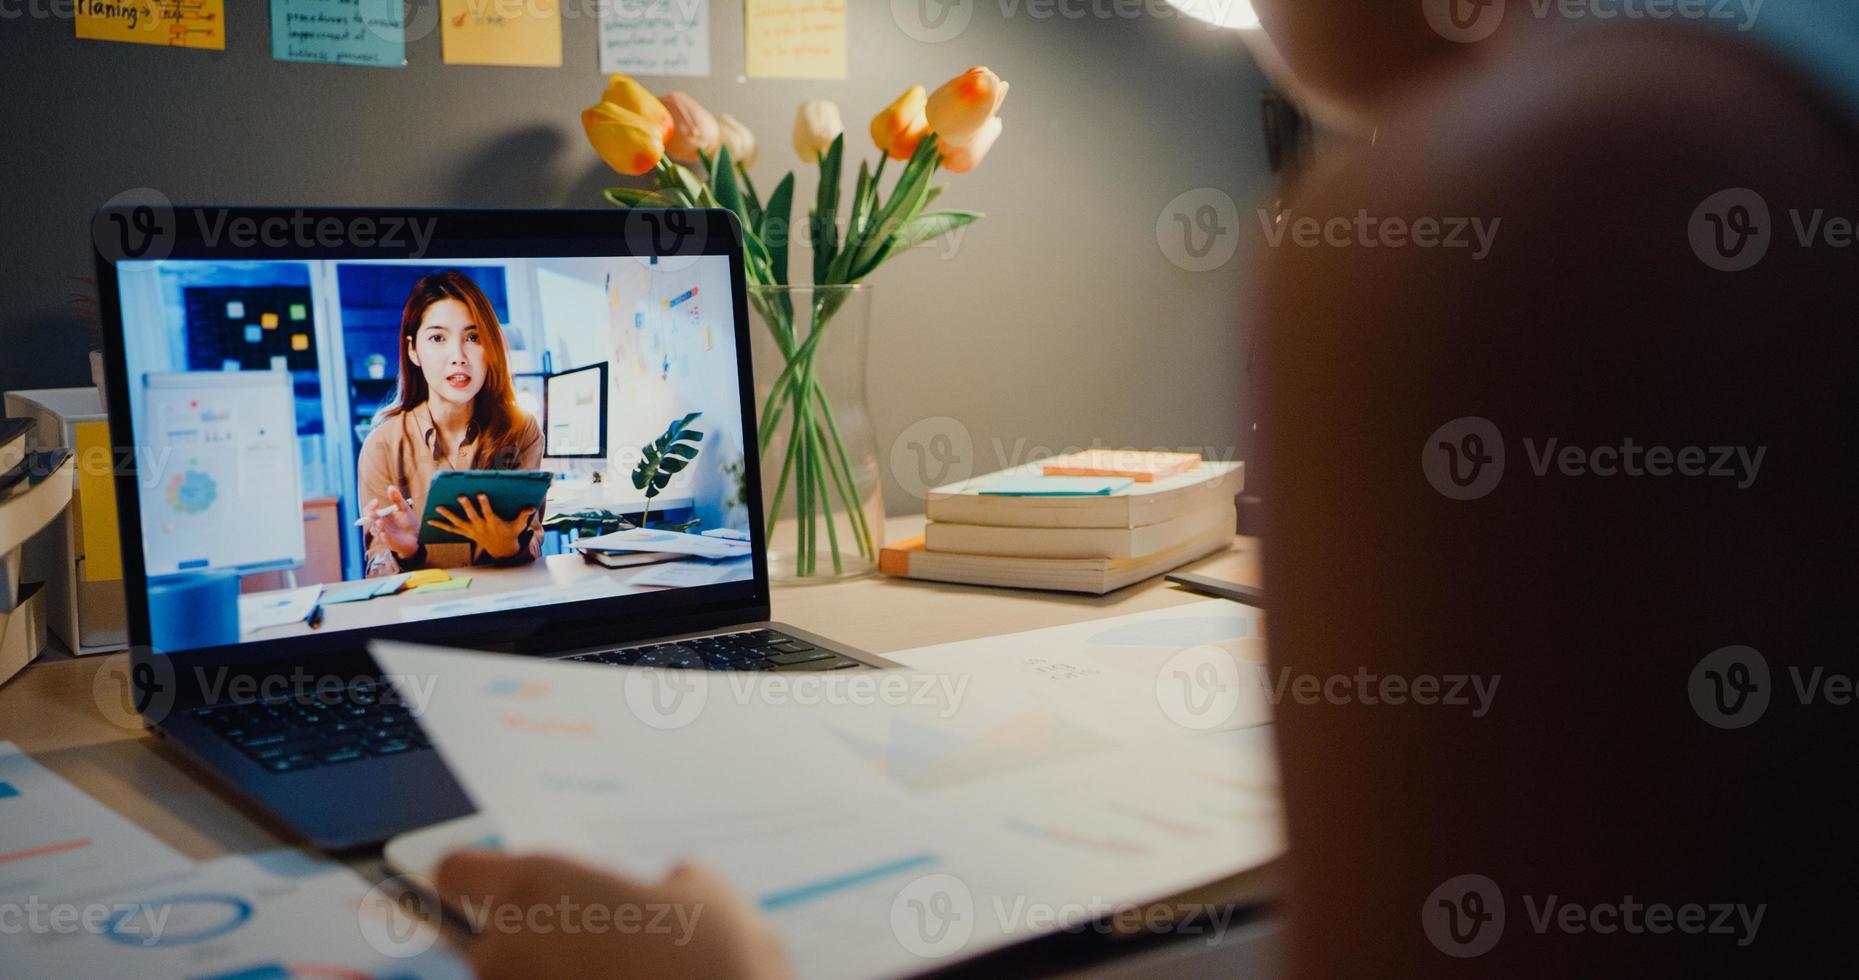 Une femme d'affaires asiatique utilisant un ordinateur portable parle à ses collègues du plan lors d'une réunion par appel vidéo dans le salon à la maison. travailler à partir de la surcharge de la maison la nuit, à distance, à distance sociale, en quarantaine pour le coronavirus. photo